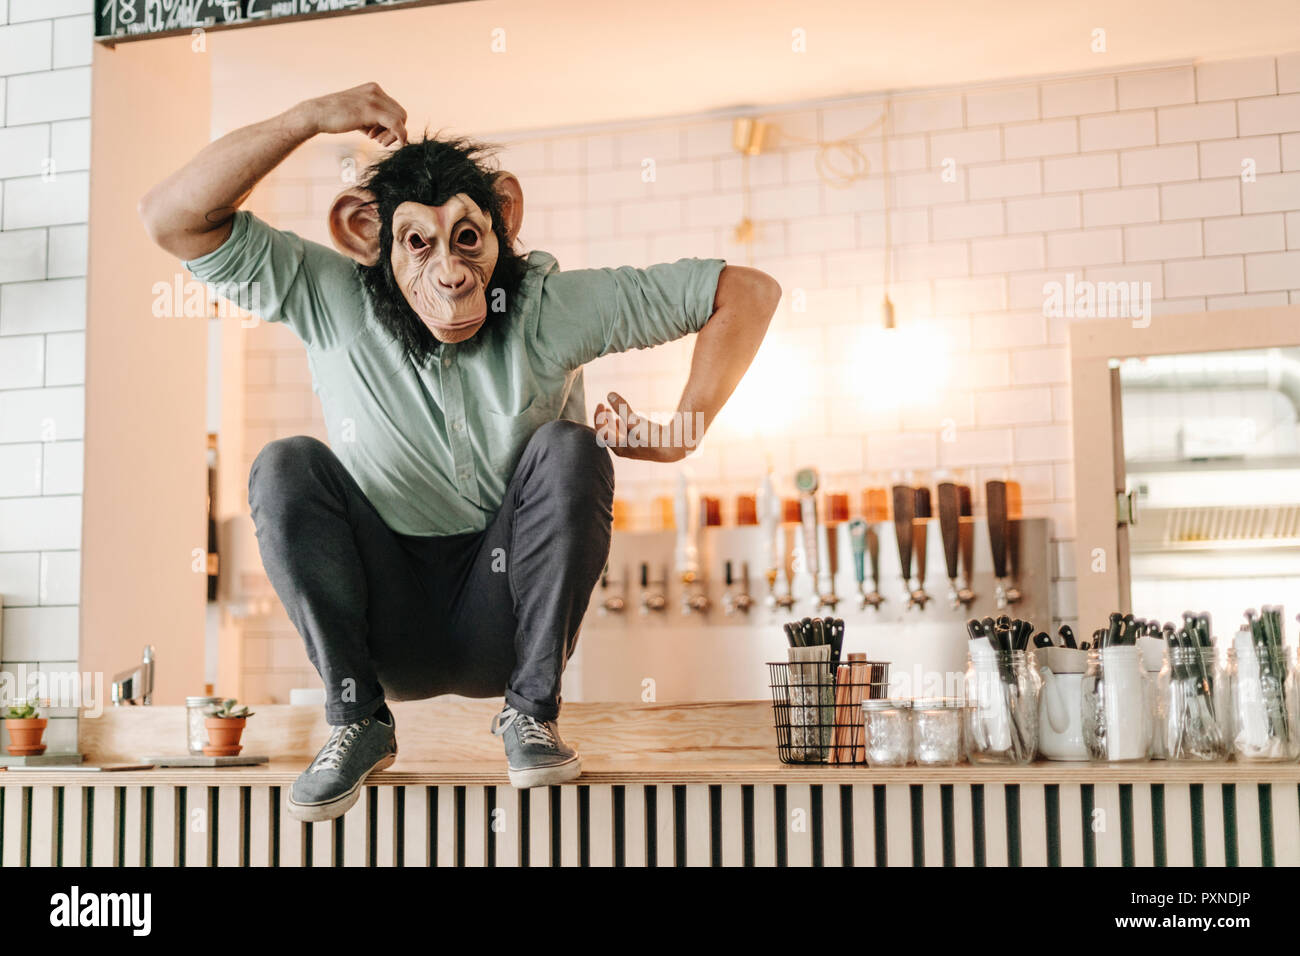 Homme portant un masque singe, assis sur le comptoir d'un bar, se grattant la tête Banque D'Images